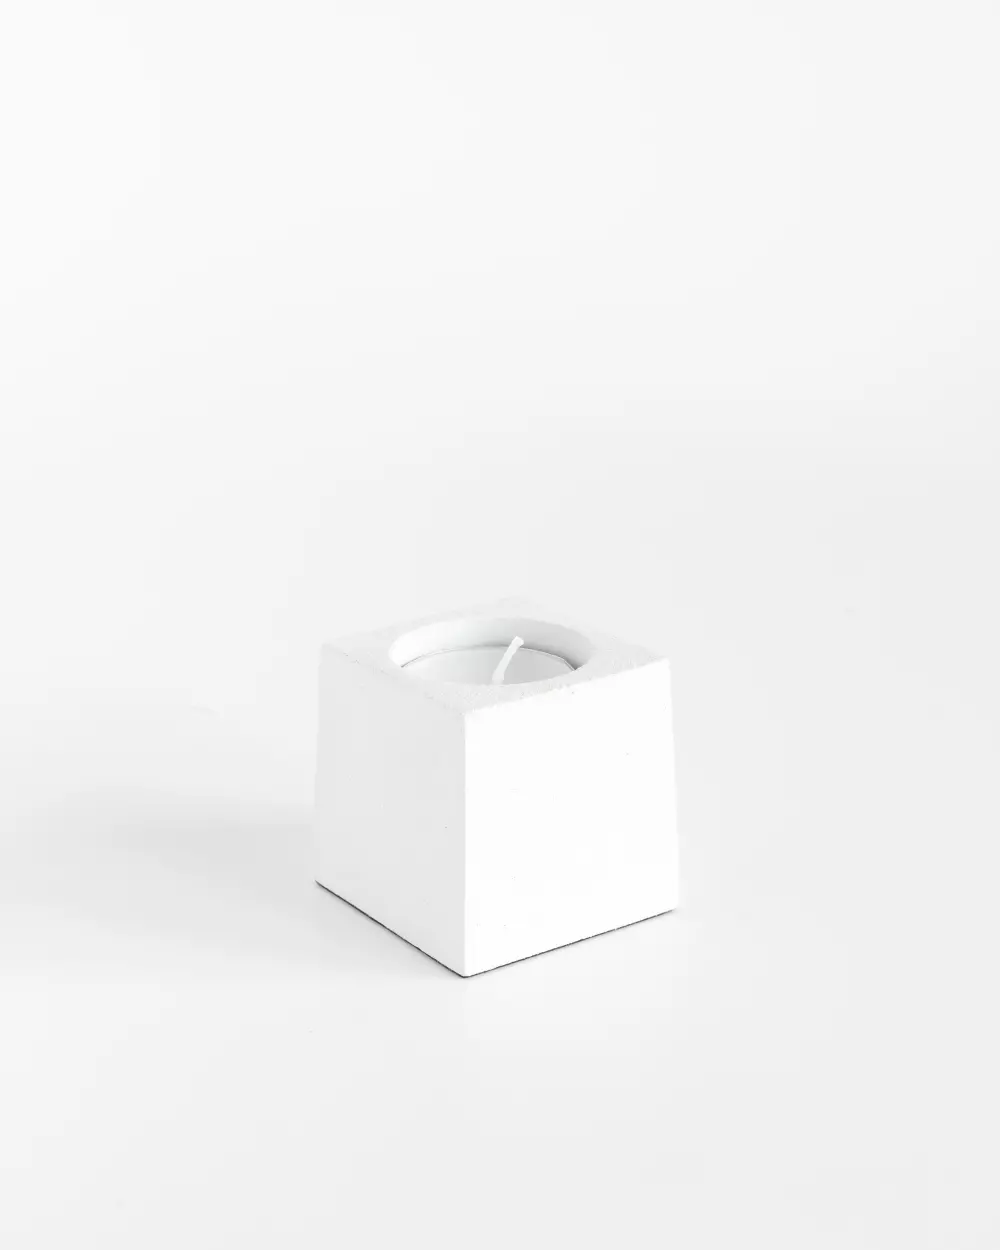 Cube T-lysholder 5cm Hvit, 7072347190082, 19008, Interiør, Telysholdere, Coming Home, Cube t-lysholder 5x5x6cm hvit